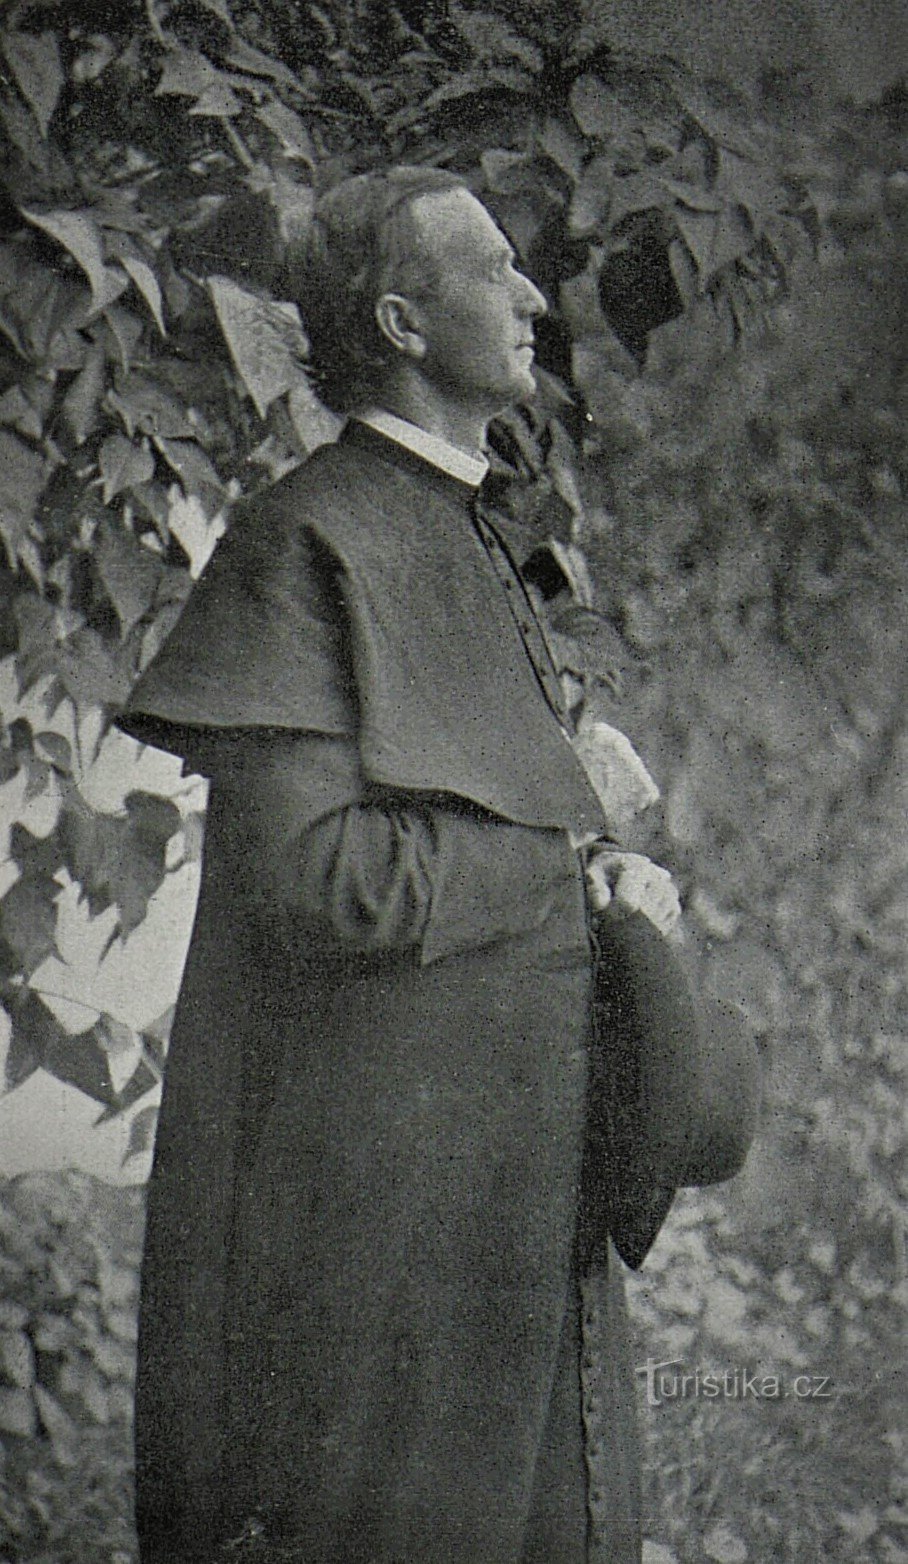 P. Andrej Hlinka (trước năm 1907)